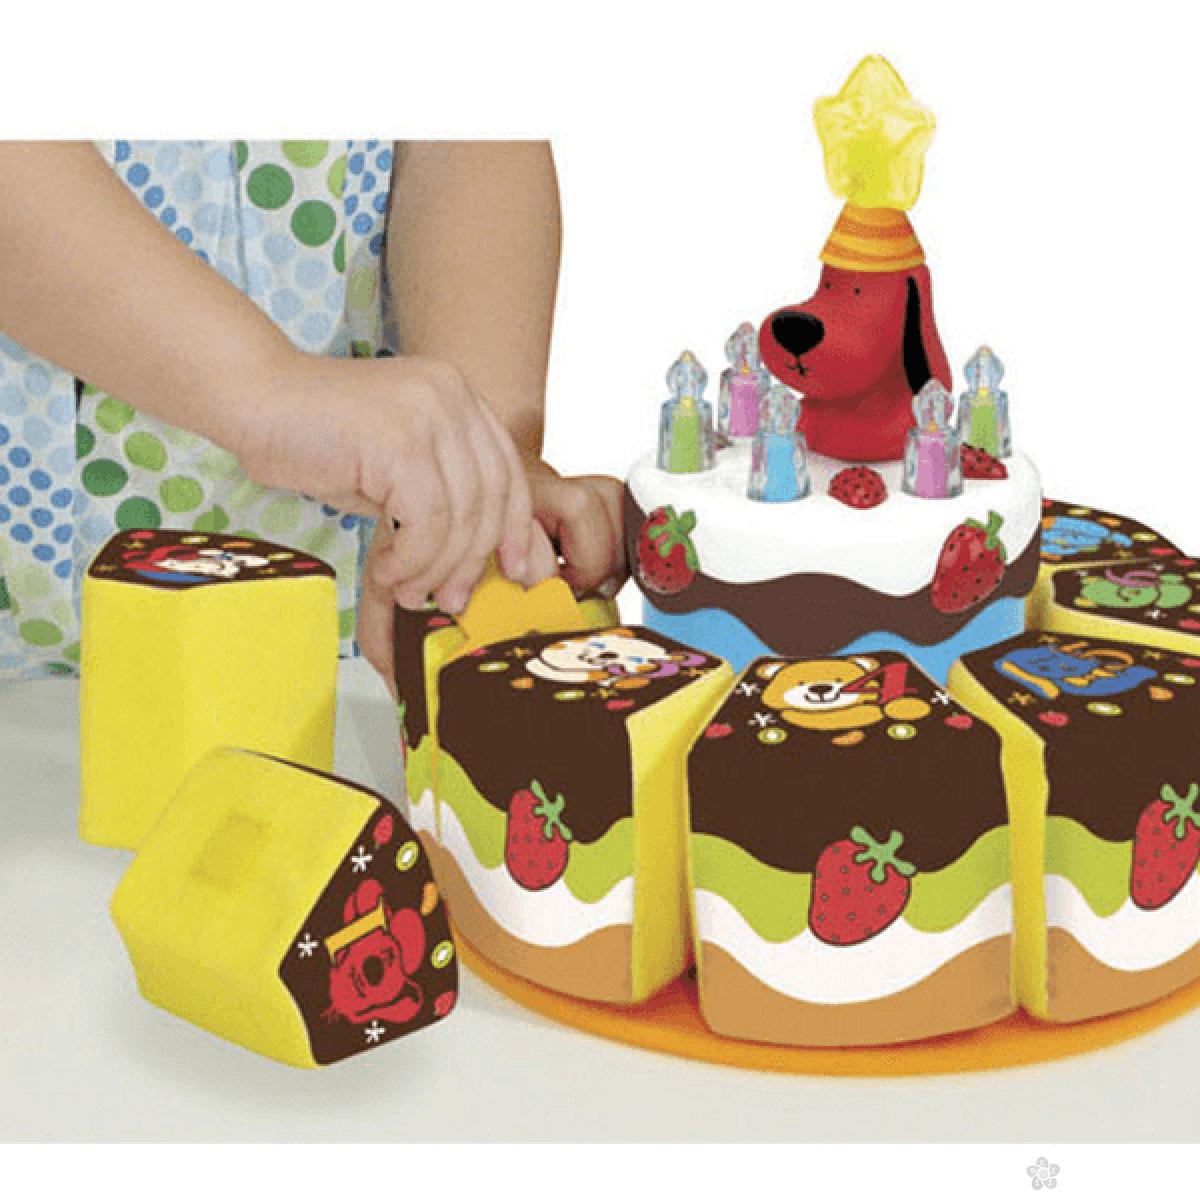 Muzička rođendanska torta KS Kids, KA10543 